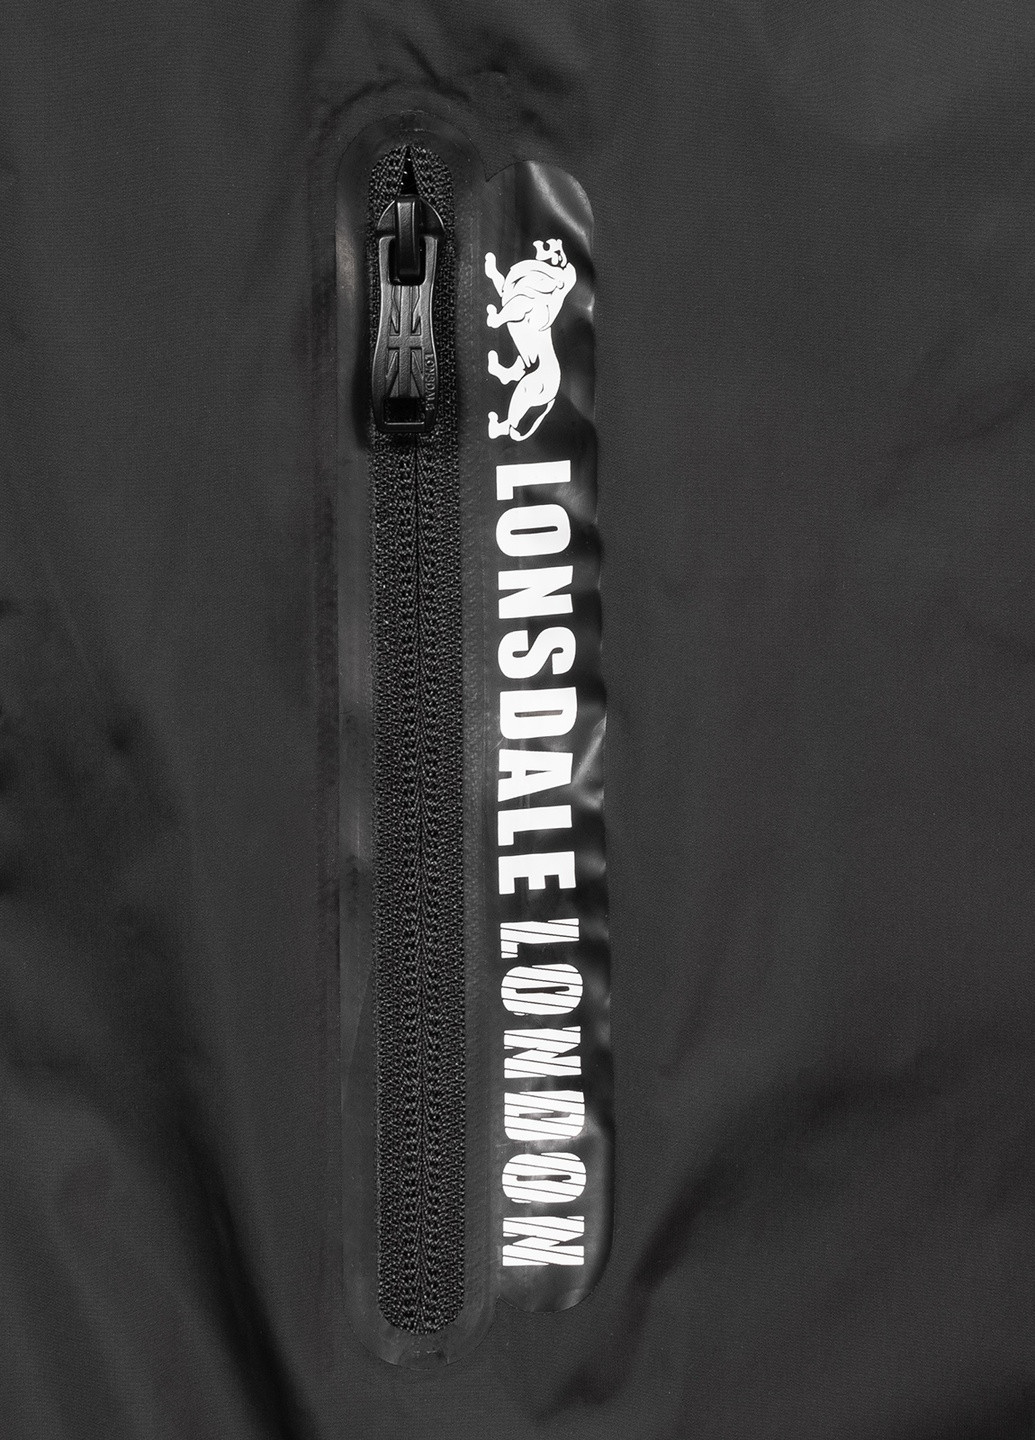 Черная демисезонная куртка Lonsdale WEEDON BEC